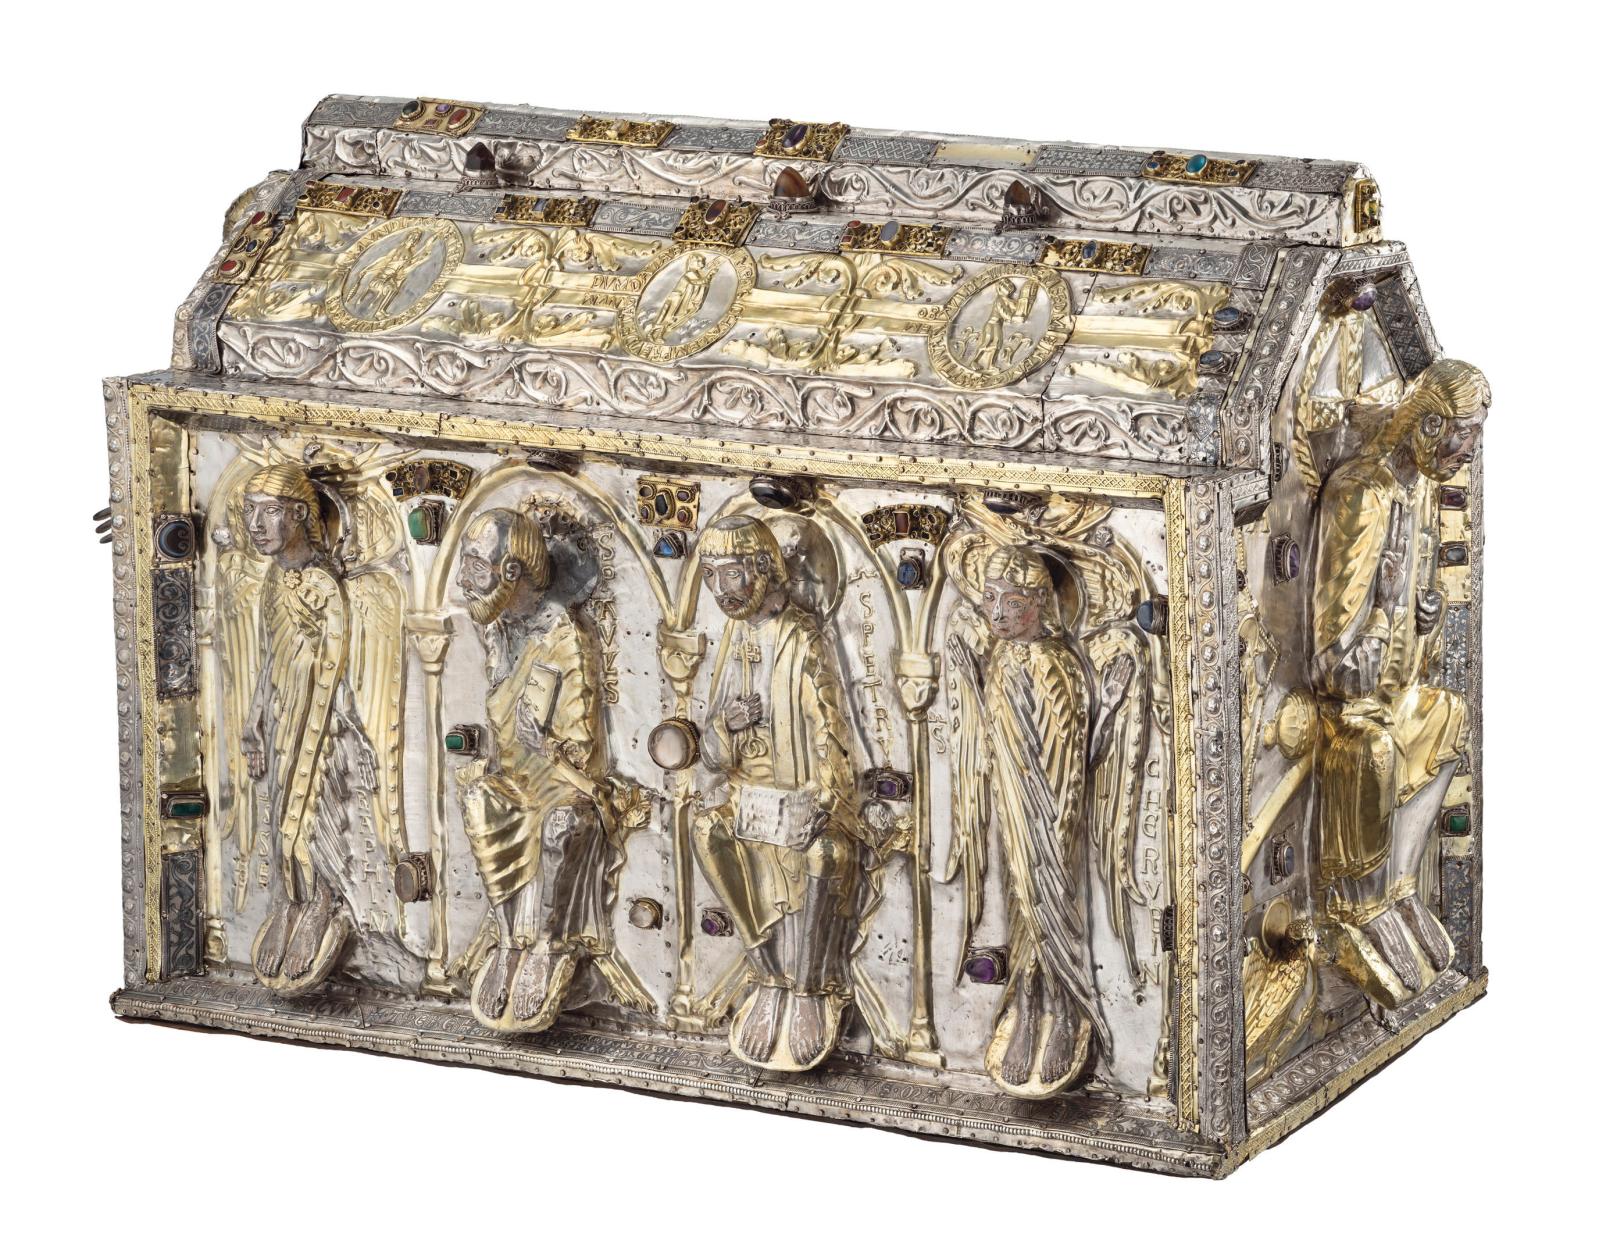 Grande châsse-reliquaire de saint Maurice, commandée en 1225, après restauration, trésor de l’abbaye de Saint-Maurice, Suisse. © Michel Ma